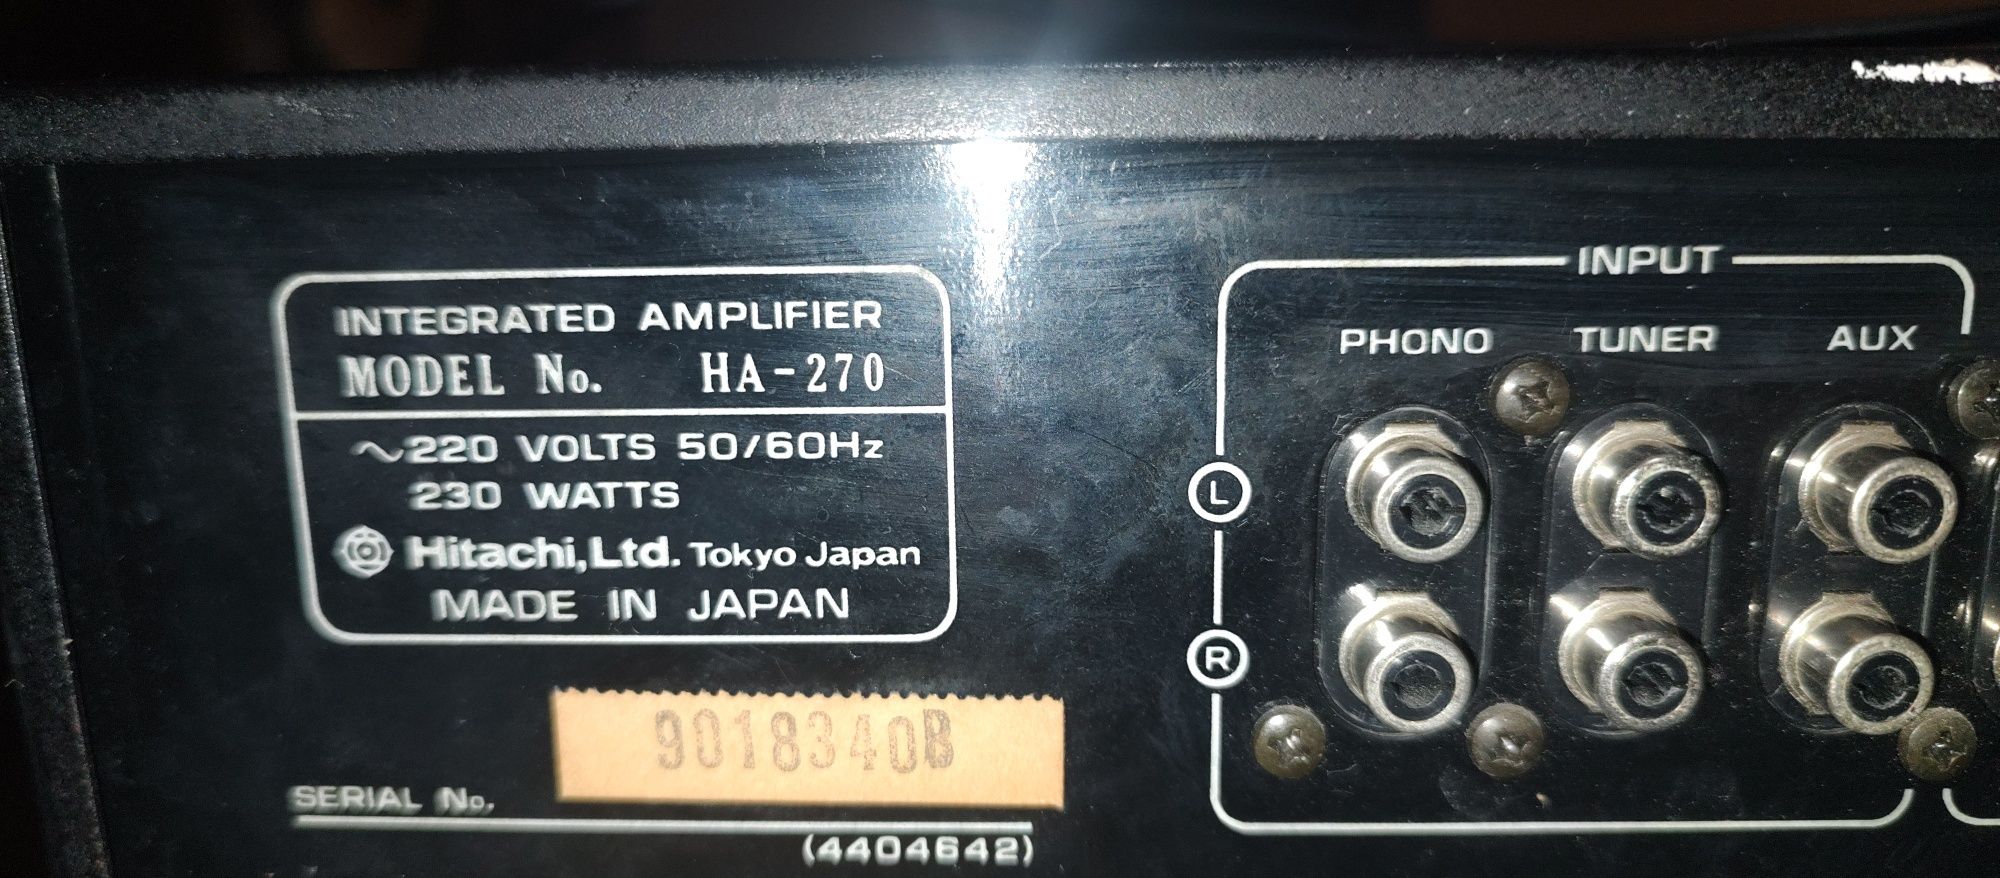 Amplificator stereo hitachi 230 W